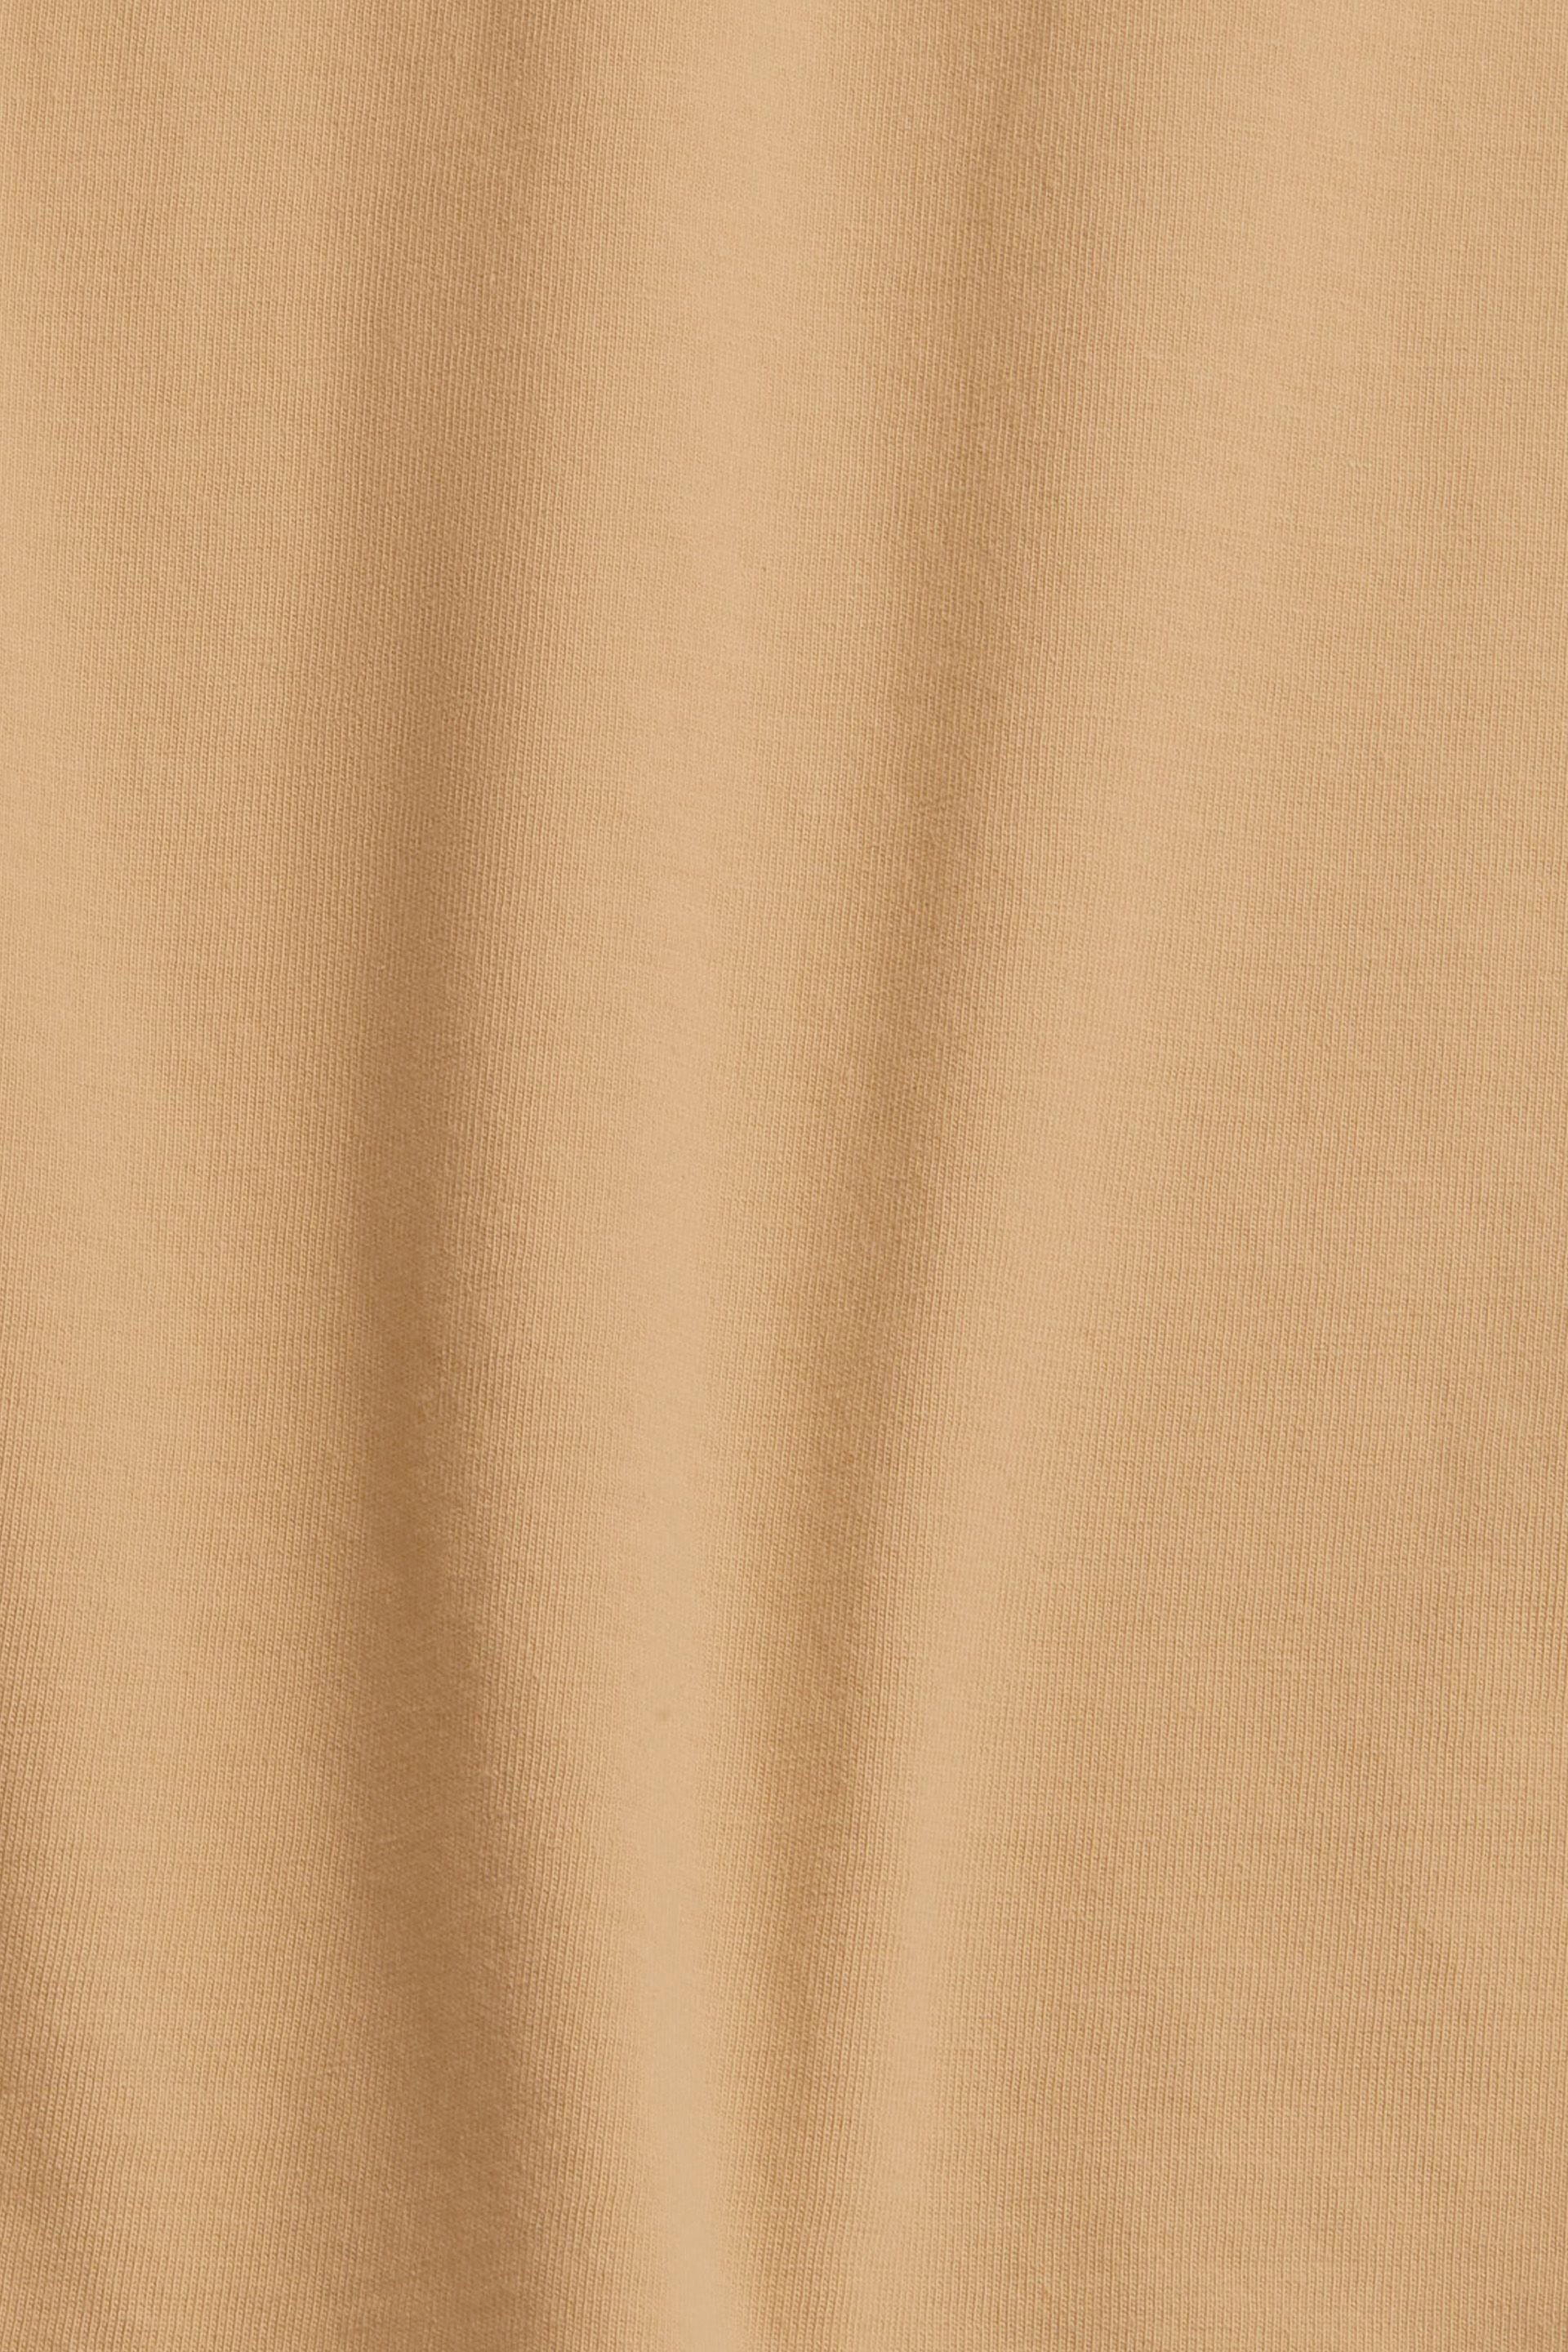 T-Shirt Esprit beige